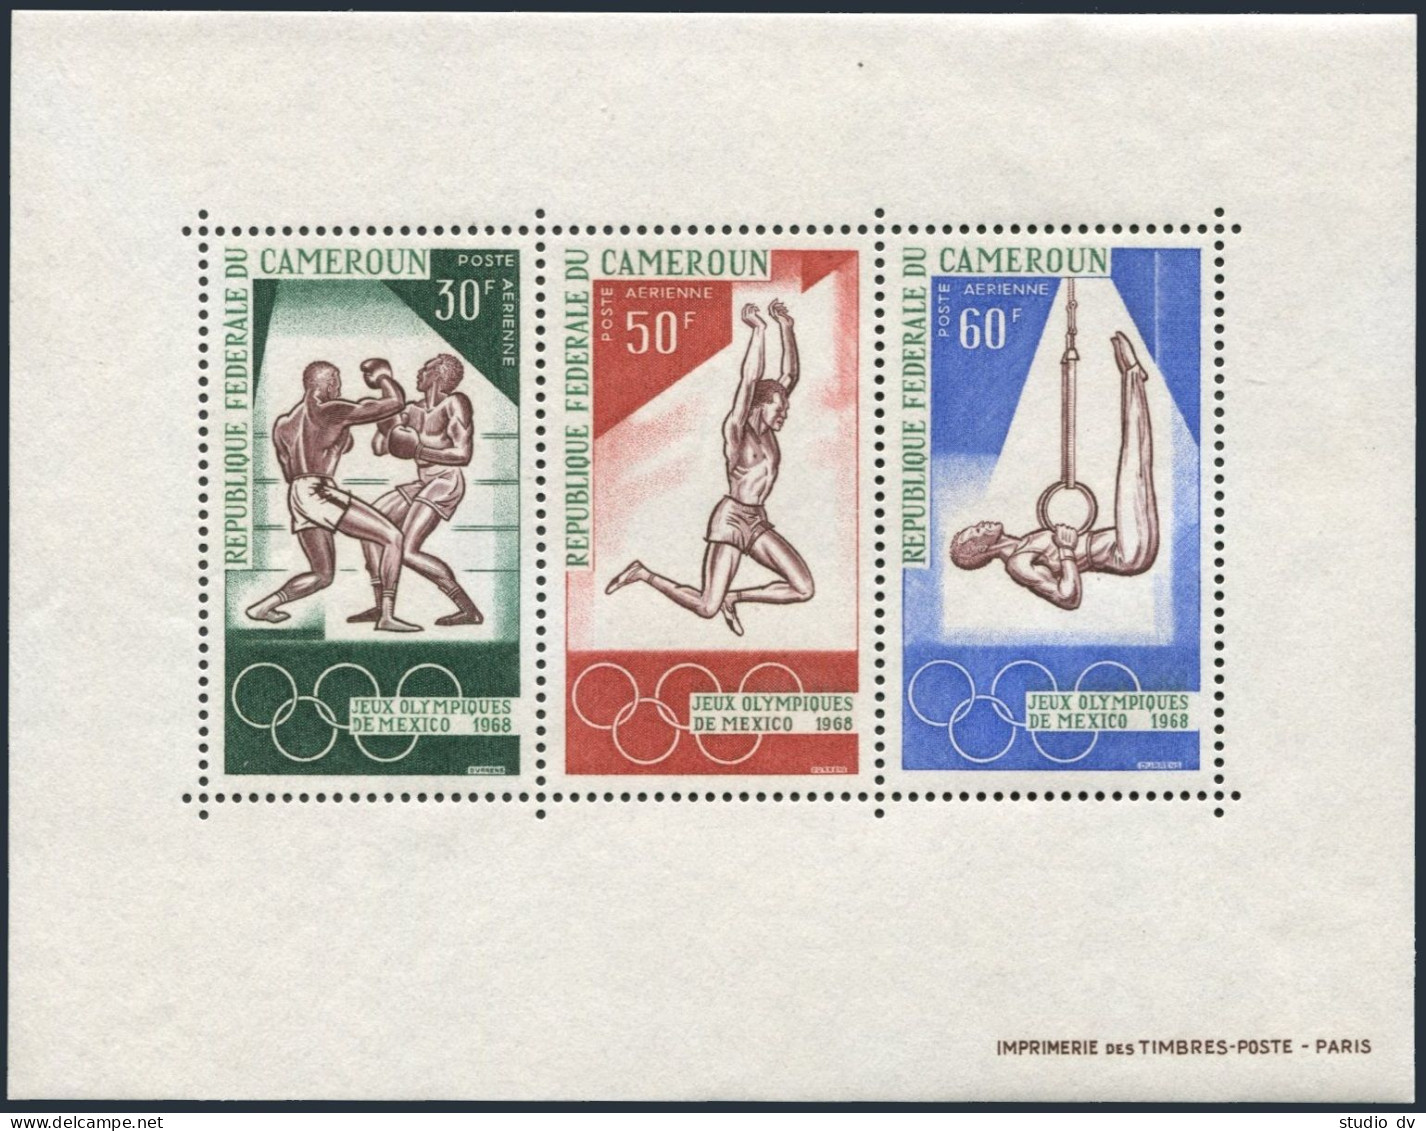 Cameroun C107-C109,C109a,MNH. Mi 552-554,Bl.4. Olympics Mexico-1968.Boxing,Jump, - Cameroun (1960-...)